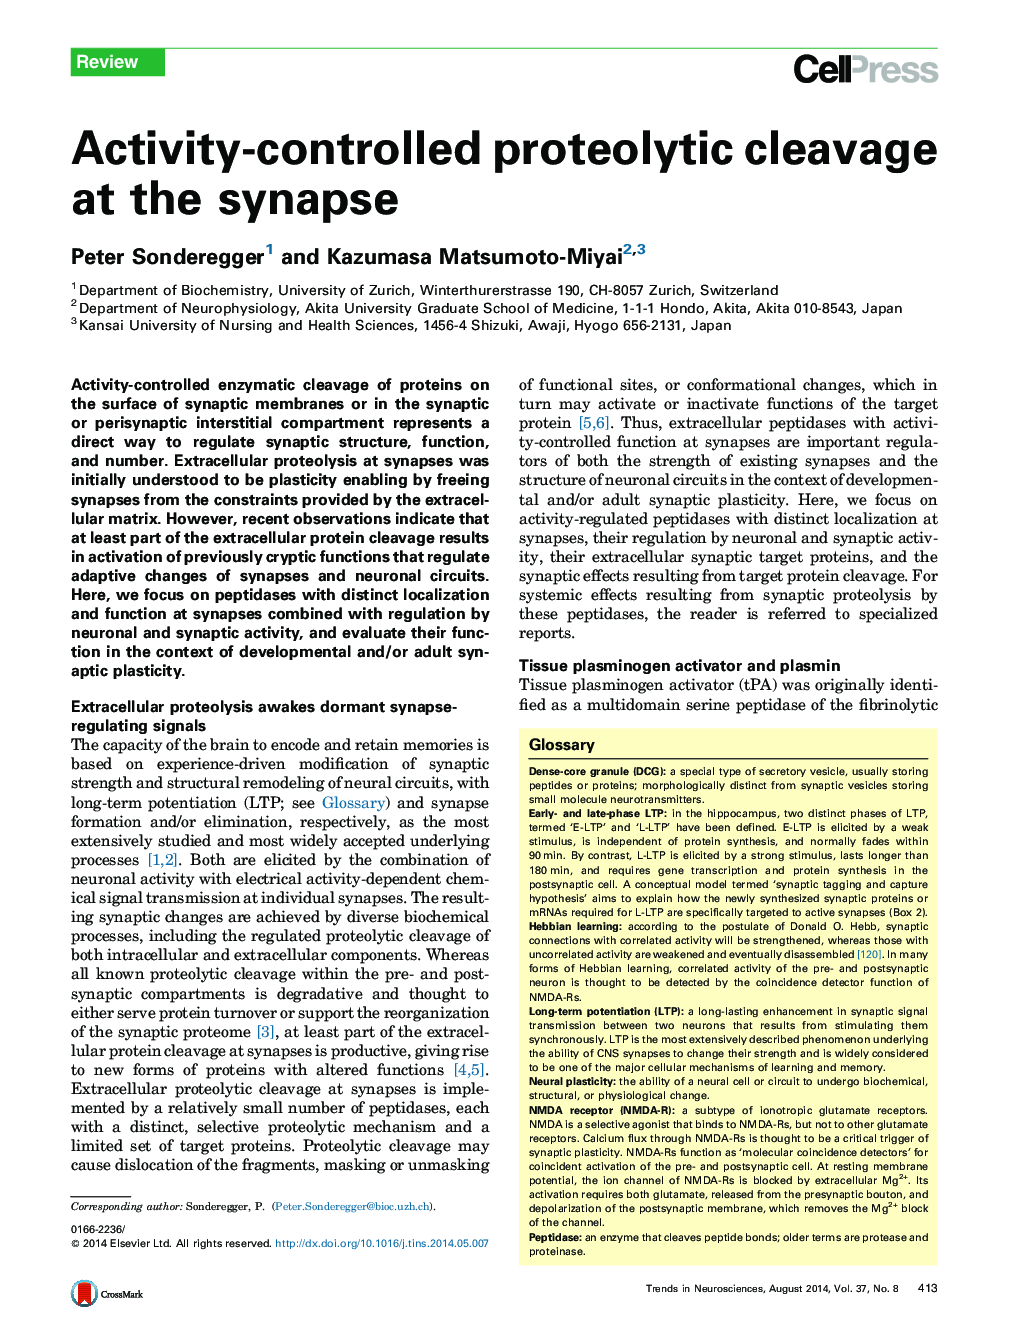 کنترل پروتئولیتیک تحت کنترل فعال در سیناپس 